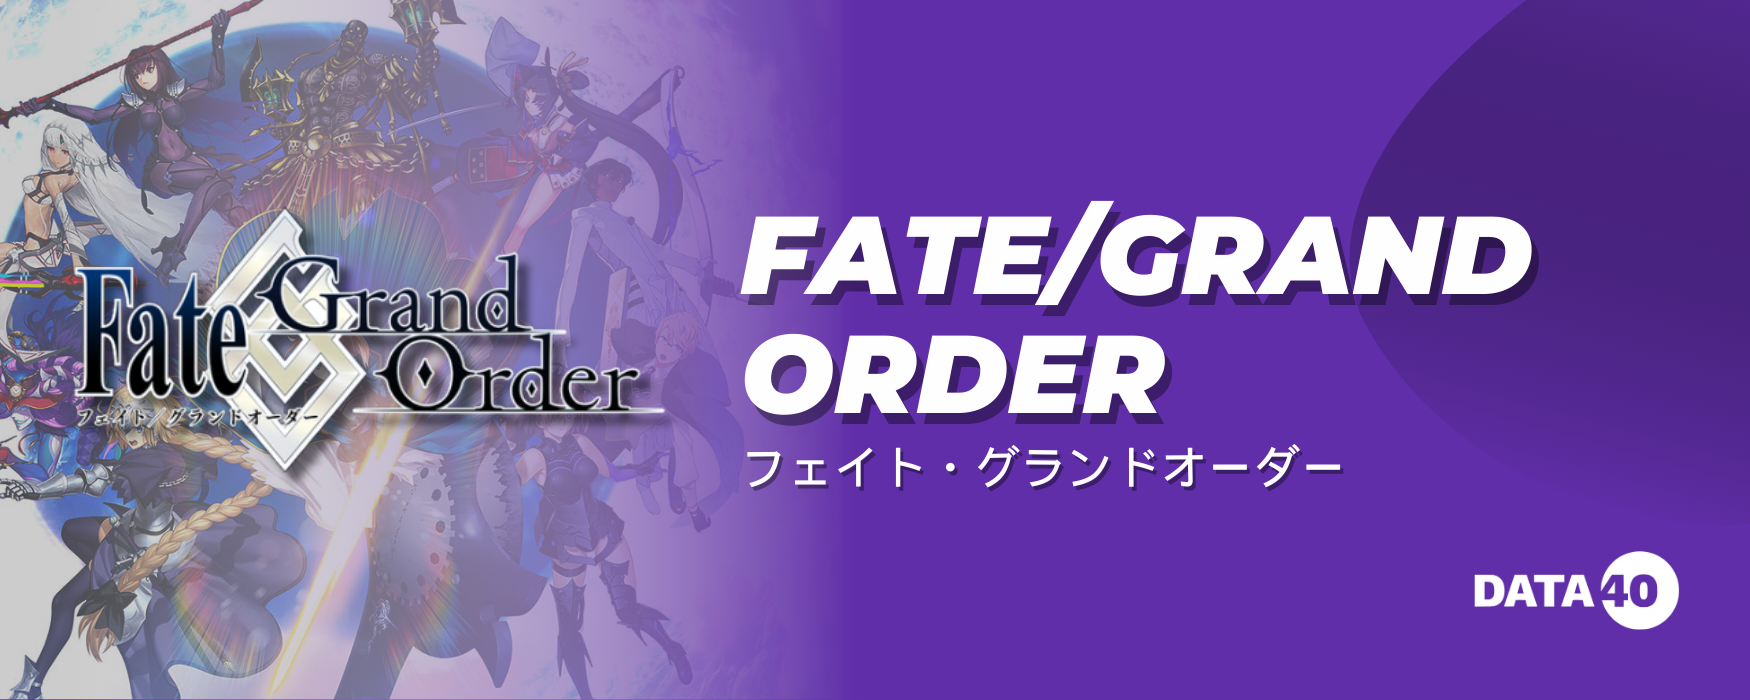 Fate_Grand Order